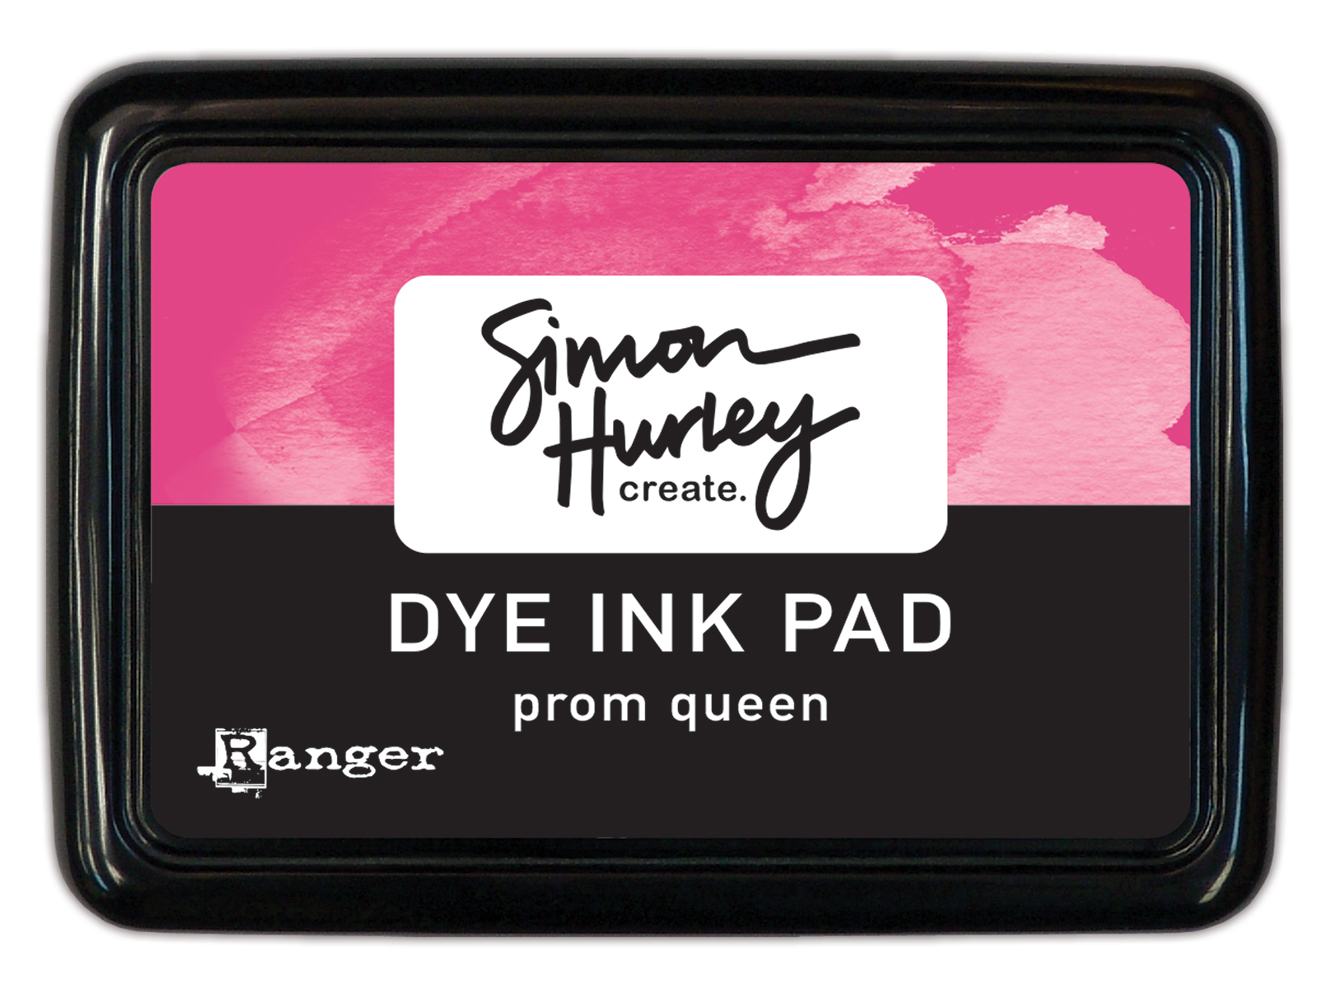 Ranger Simon Hurley Dye Ink Prom Queen